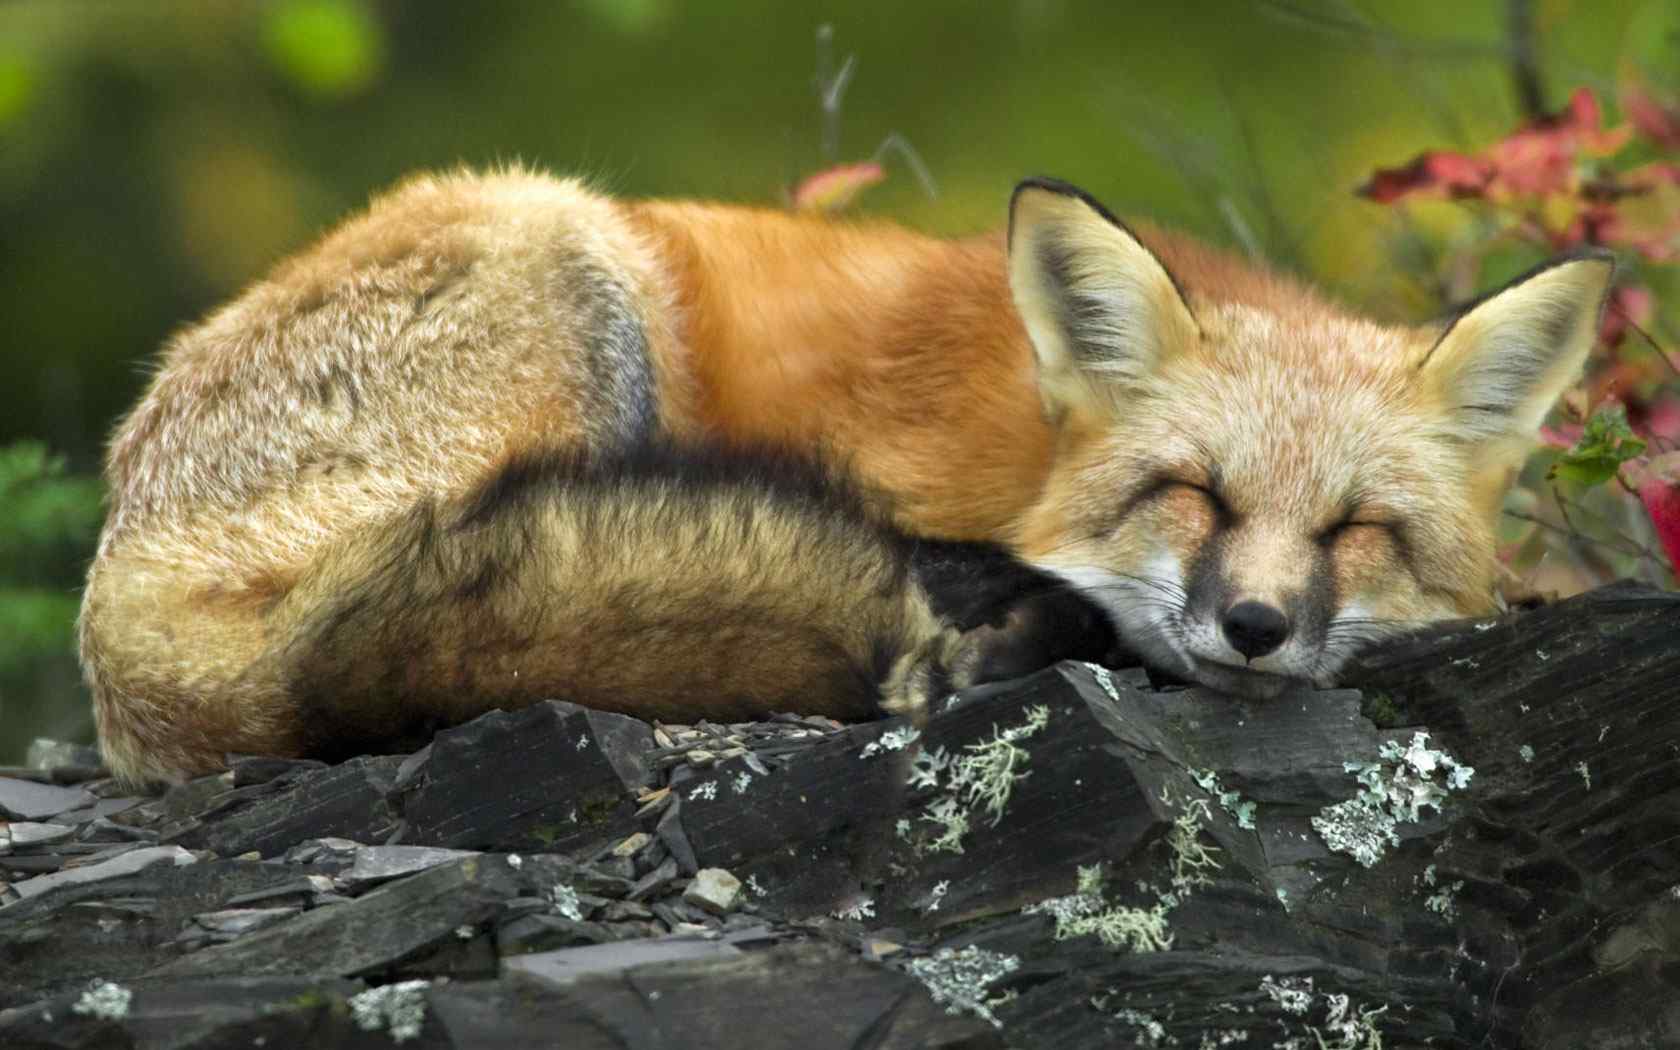 酣睡狐狸摄影壁纸